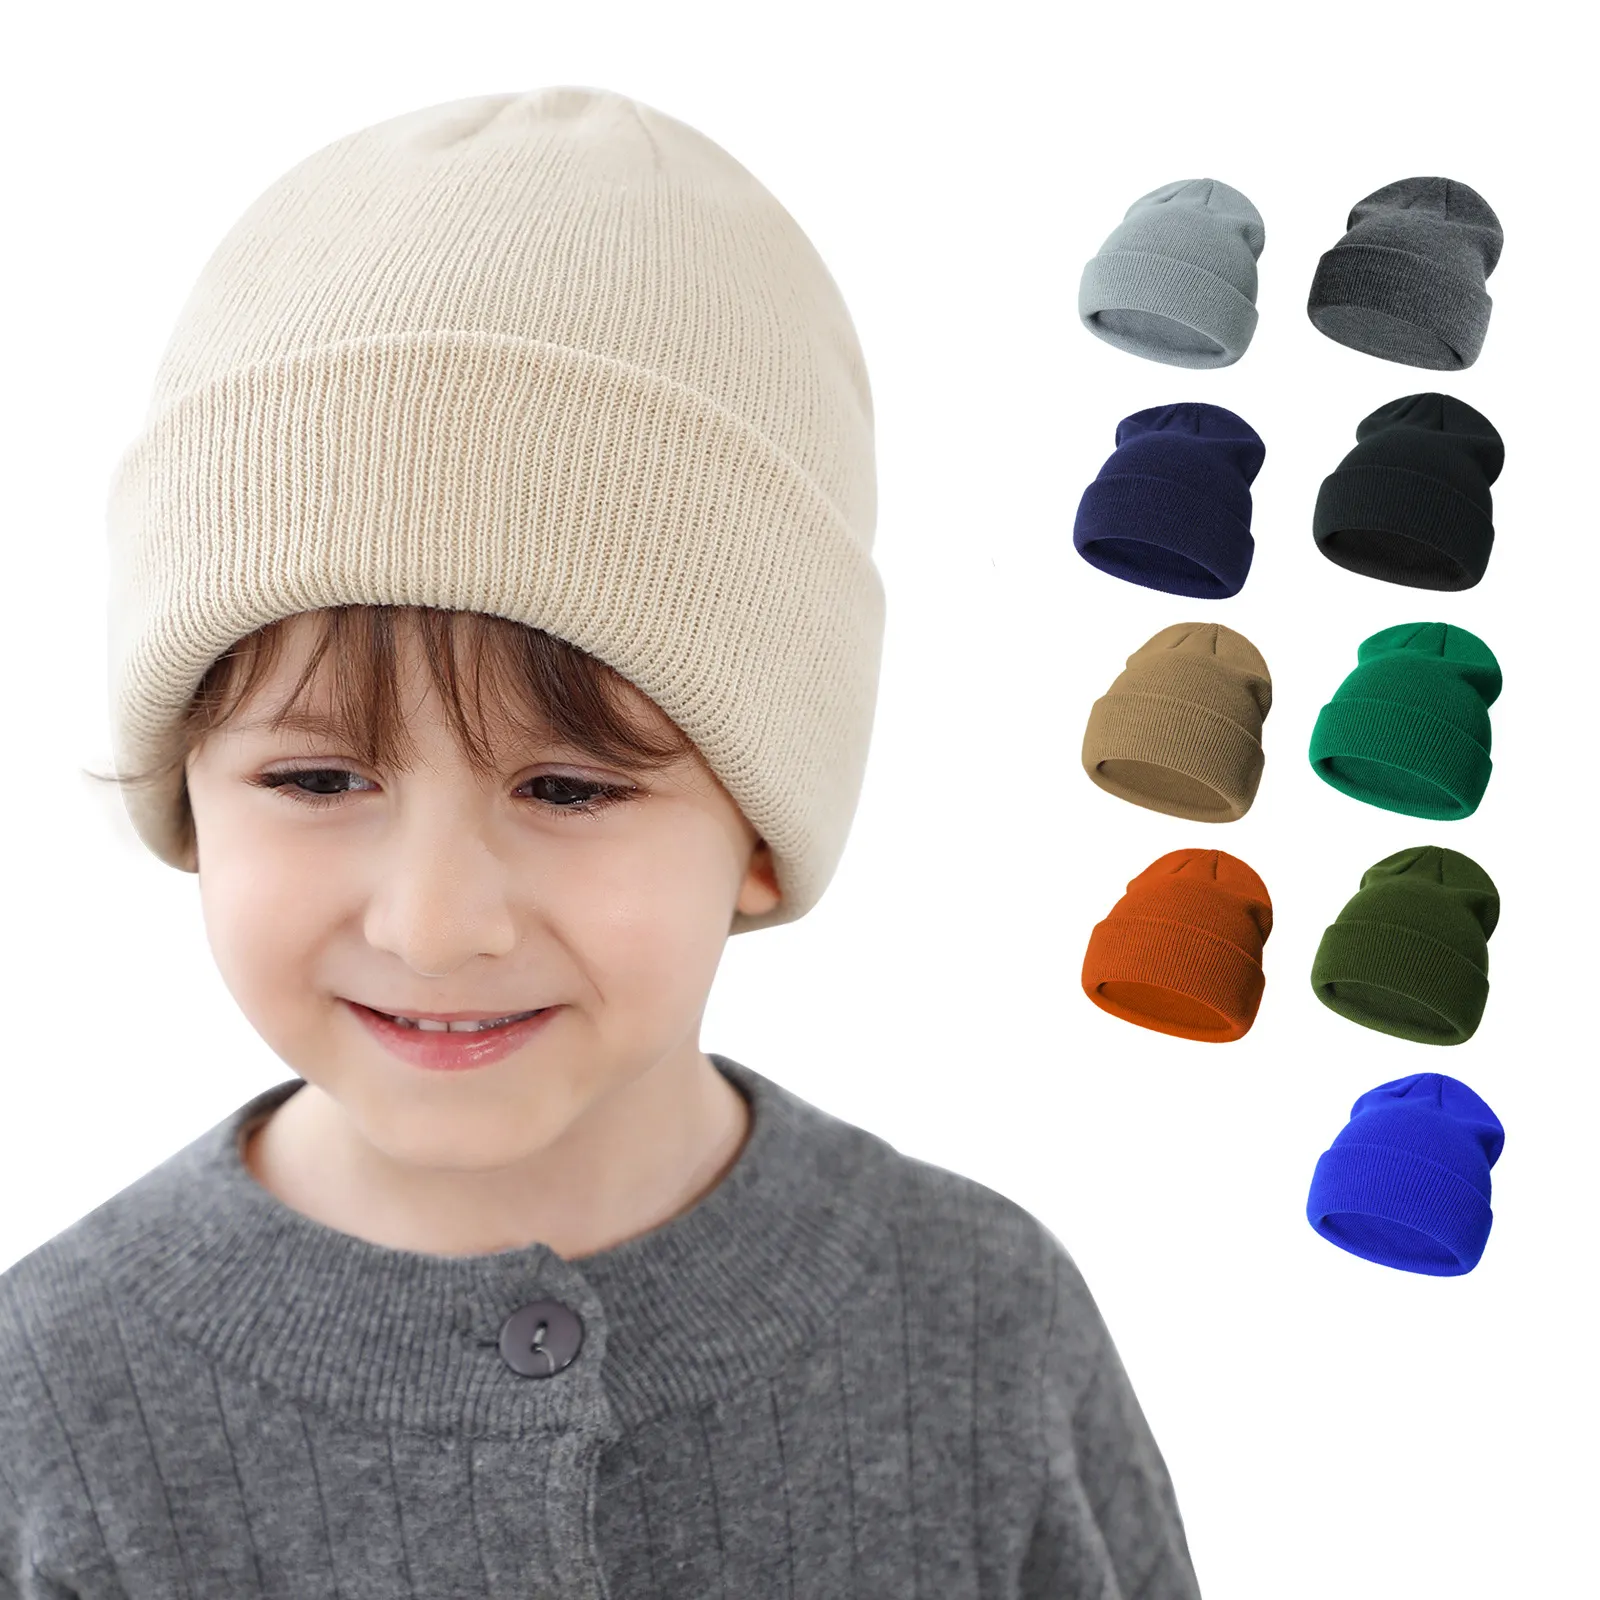 หมวกไหมพรมสำหรับเด็ก0-2ปี, หมวกบีนนี่หมวกฤดูหนาวสีทึบ